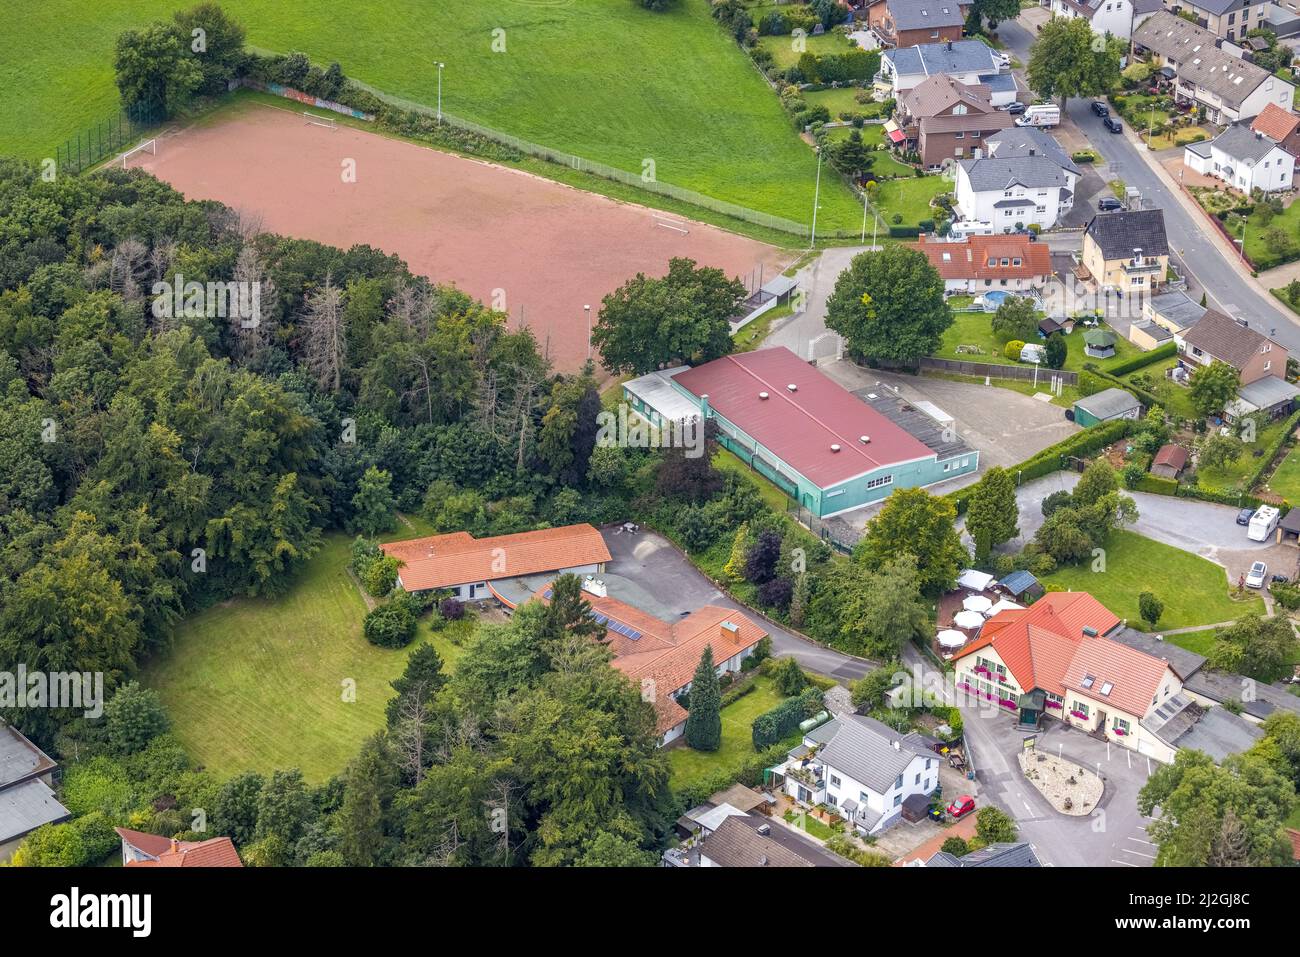 Vista aérea, vista a la ciudad de , Luftbild, Ortsansicht Stadtteil Hohenheide und Schützenhalle mit Sportplatz SV Hohenheide, Fröndenberg/Ruhr, Ruhrgebiet, N Foto de stock